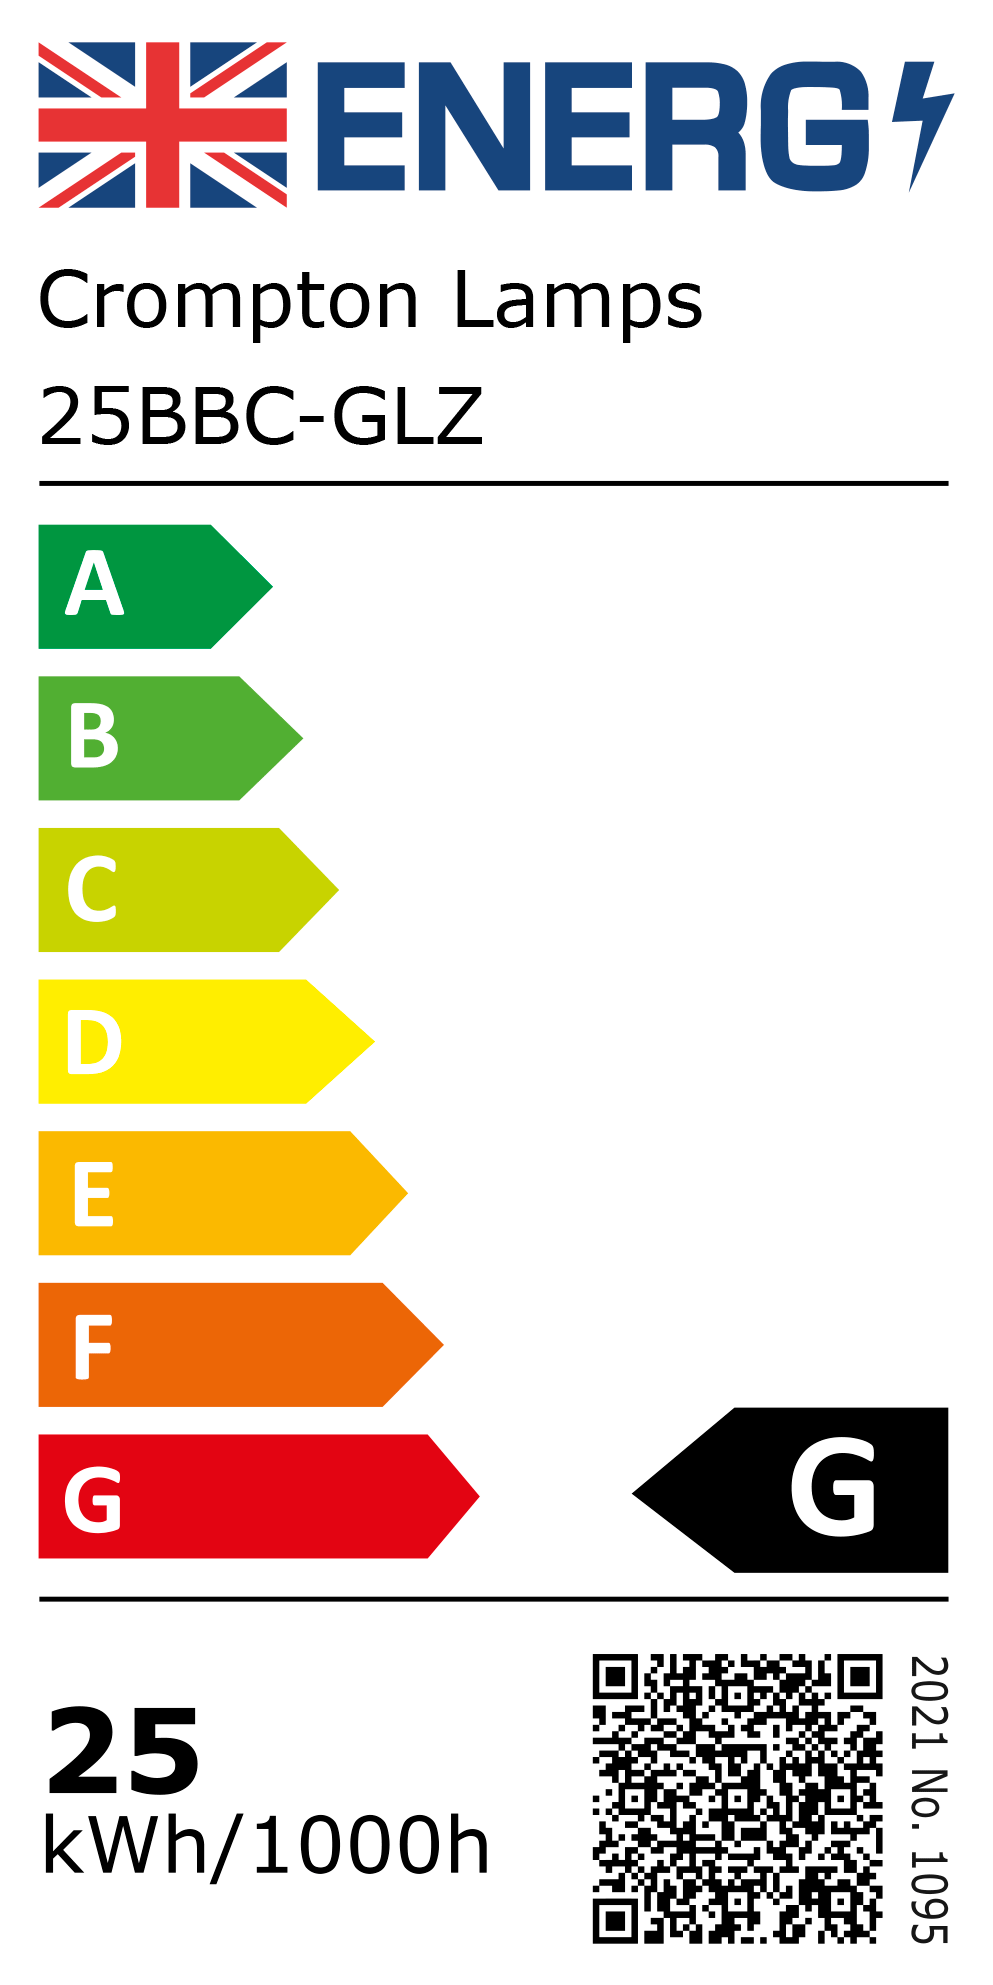 New 2021 Energy Rating Label: Stock Code 25BBC-GLZ